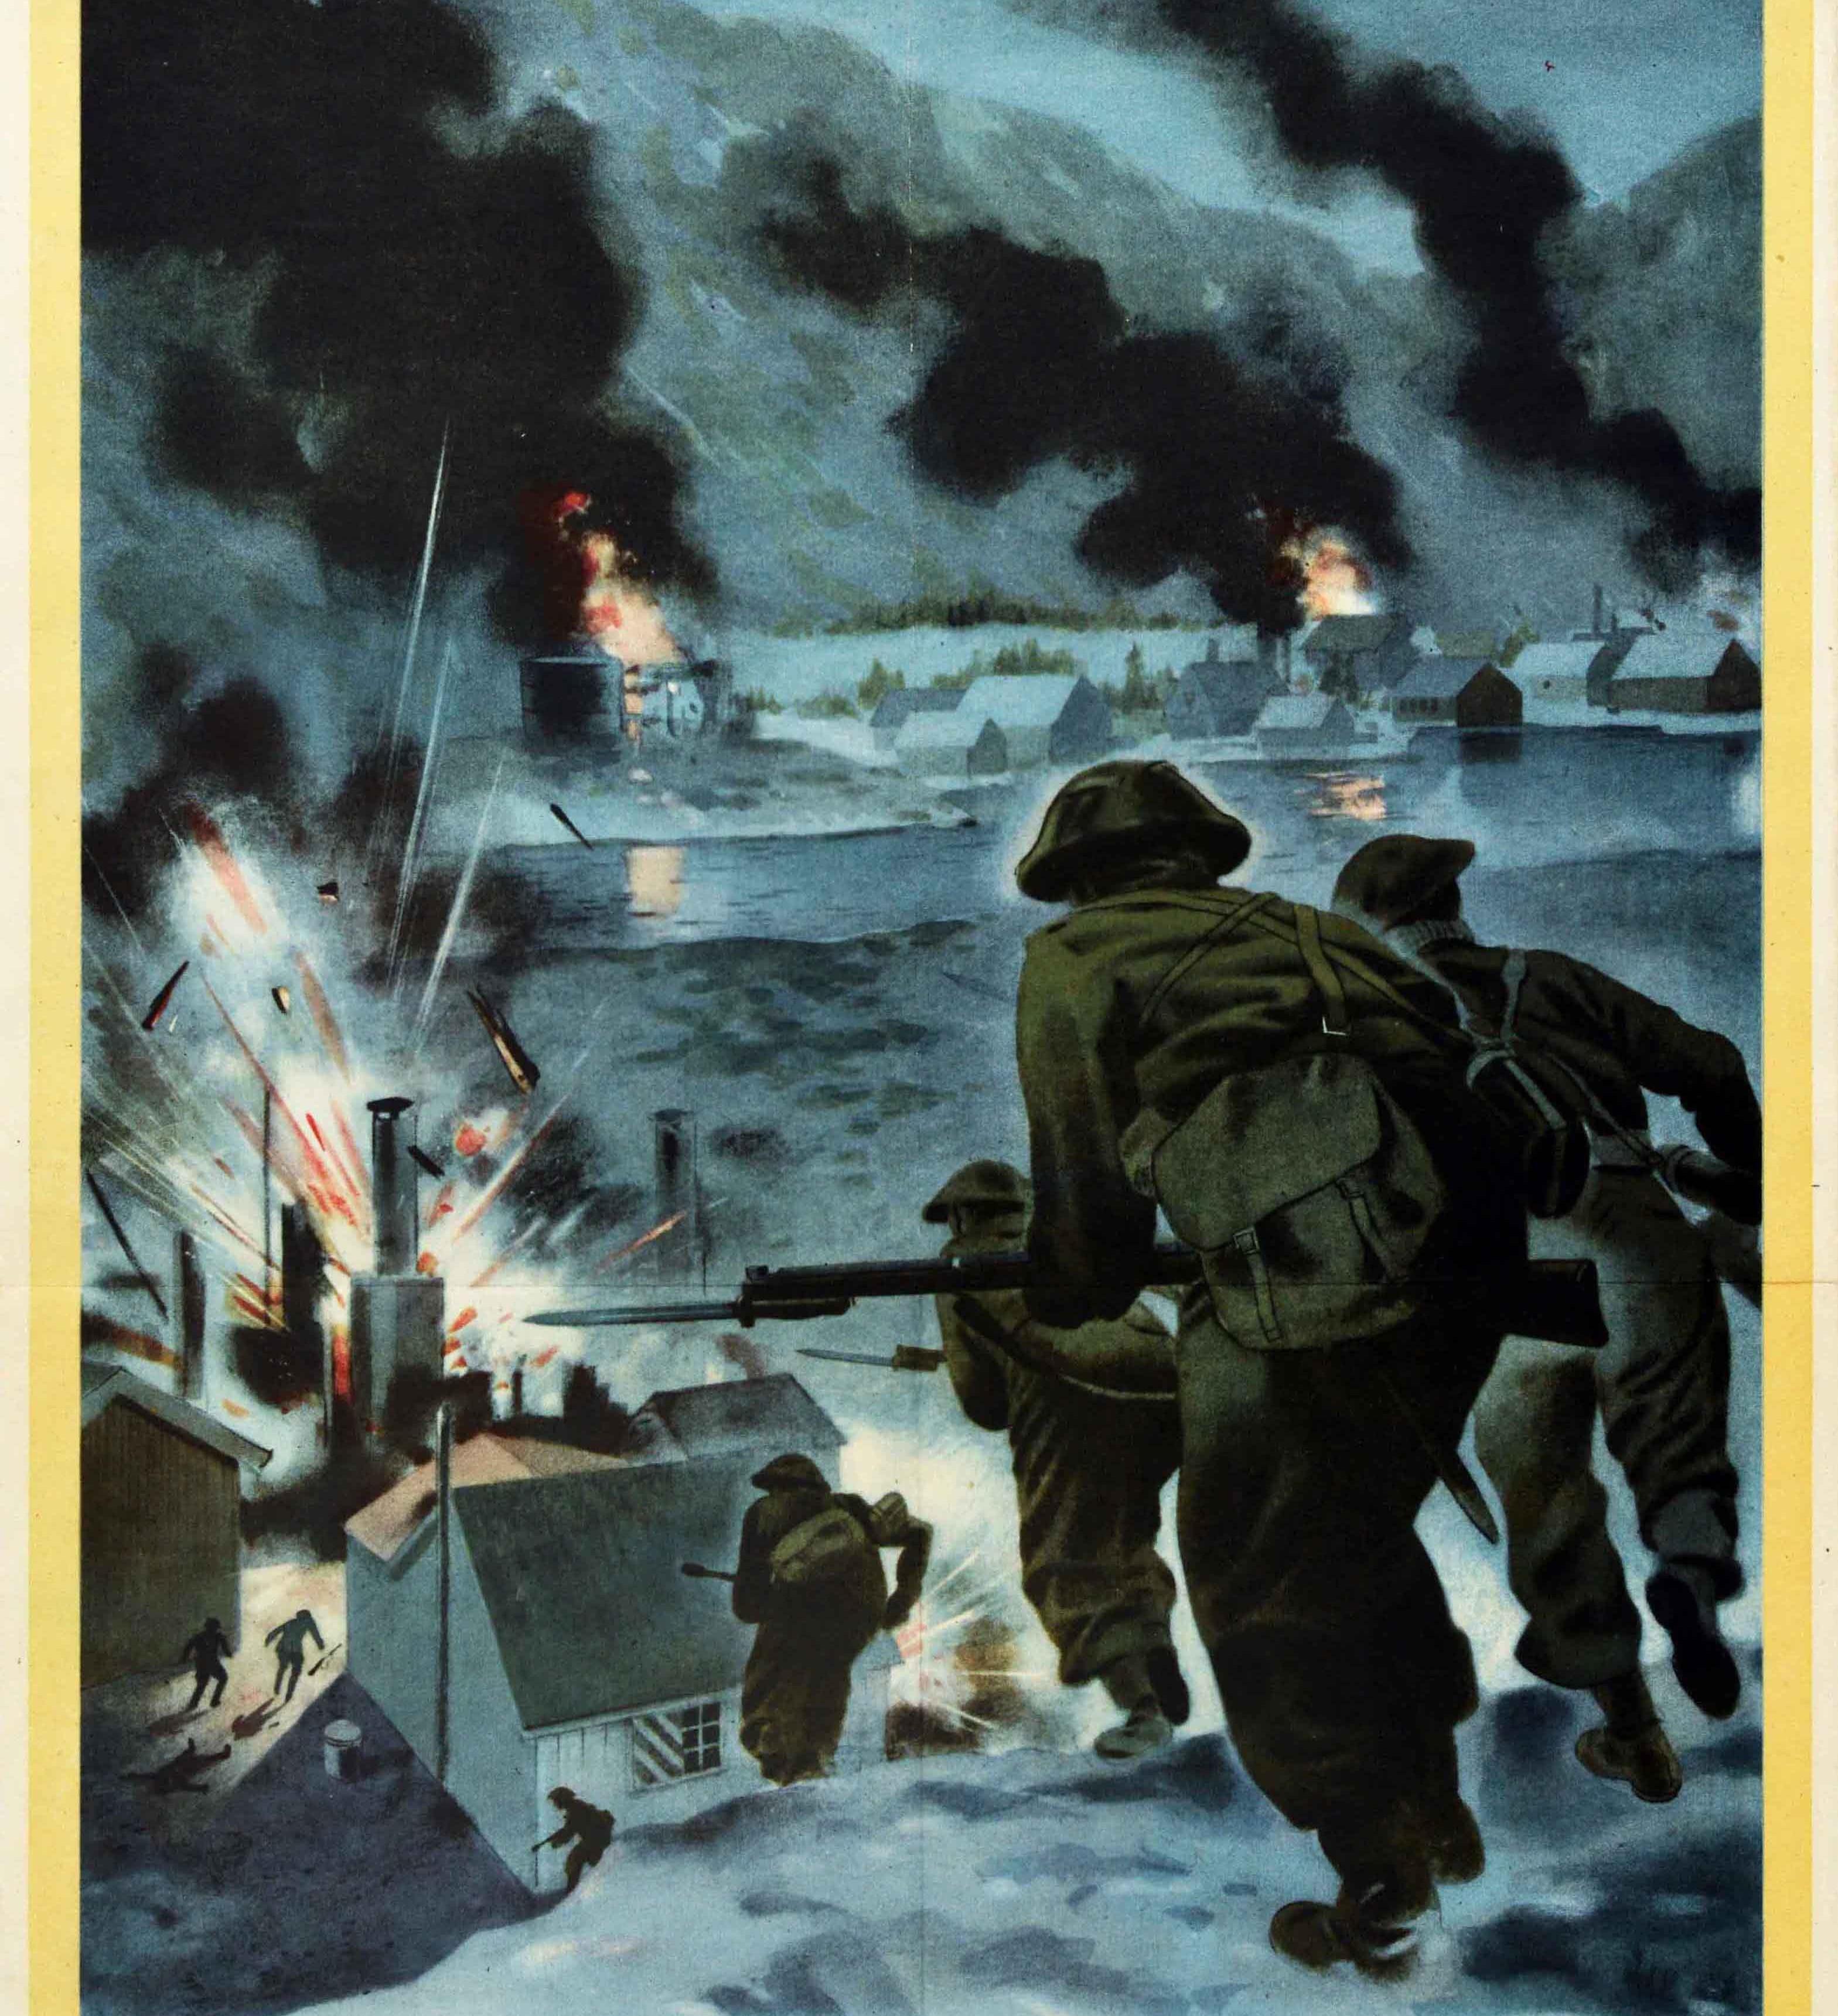 Originales Propagandaposter aus dem Zweiten Weltkrieg - Back Them Up! Dynamische Illustration einer Kampfszene mit britischen Soldaten mit Bajonettgewehren, die einen Hügel hinunter in Richtung eines von den Deutschen gehaltenen Hafens in Norwegen